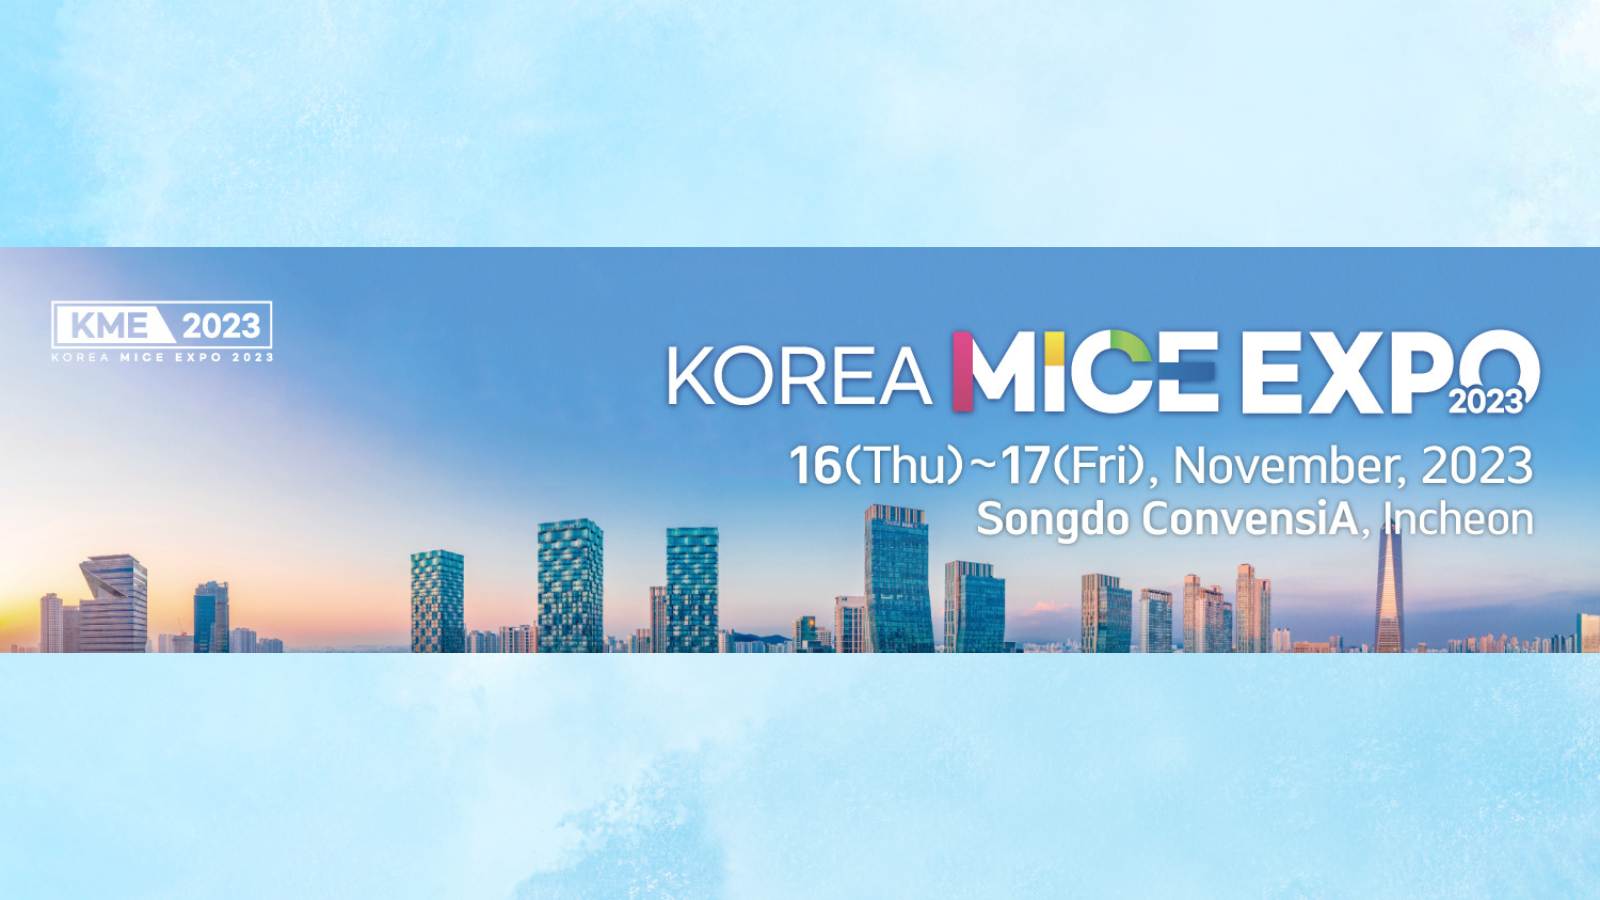 Korea MICE EXPO